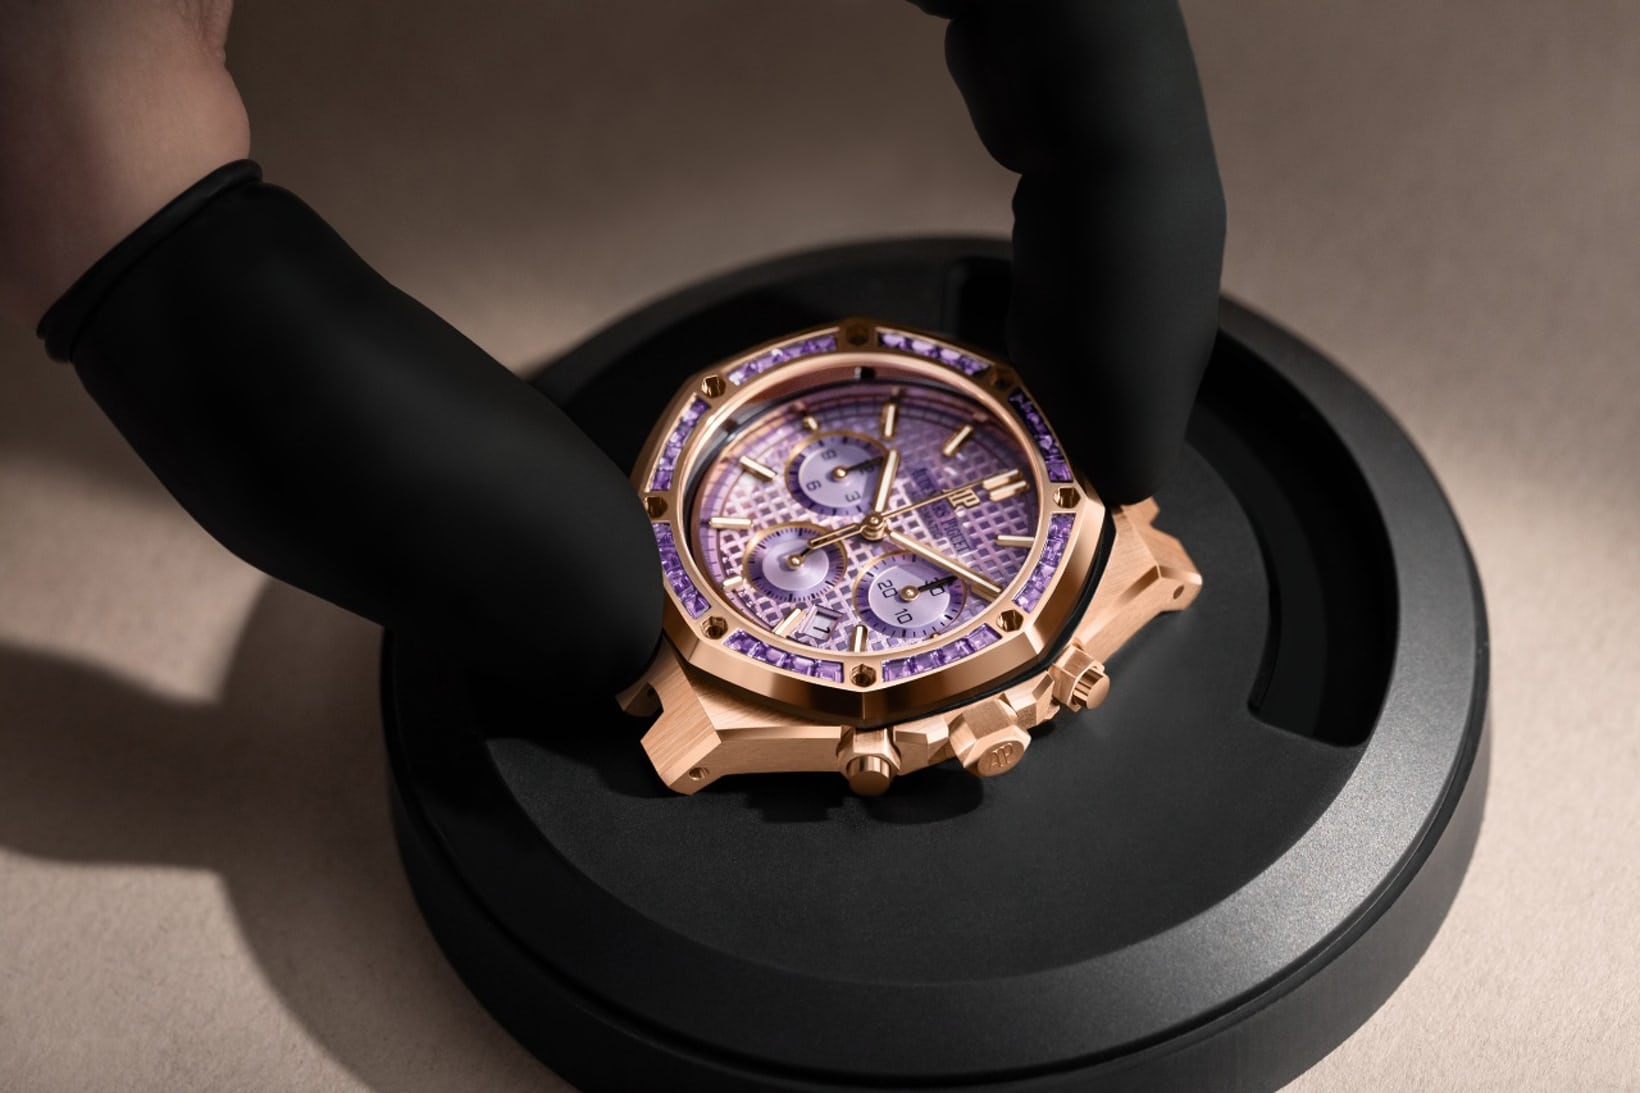 Đồng hồ Audemars Piguet Royal Oak Self-Winding Chronograph 38mm trong vàng hồng, mặt số tím